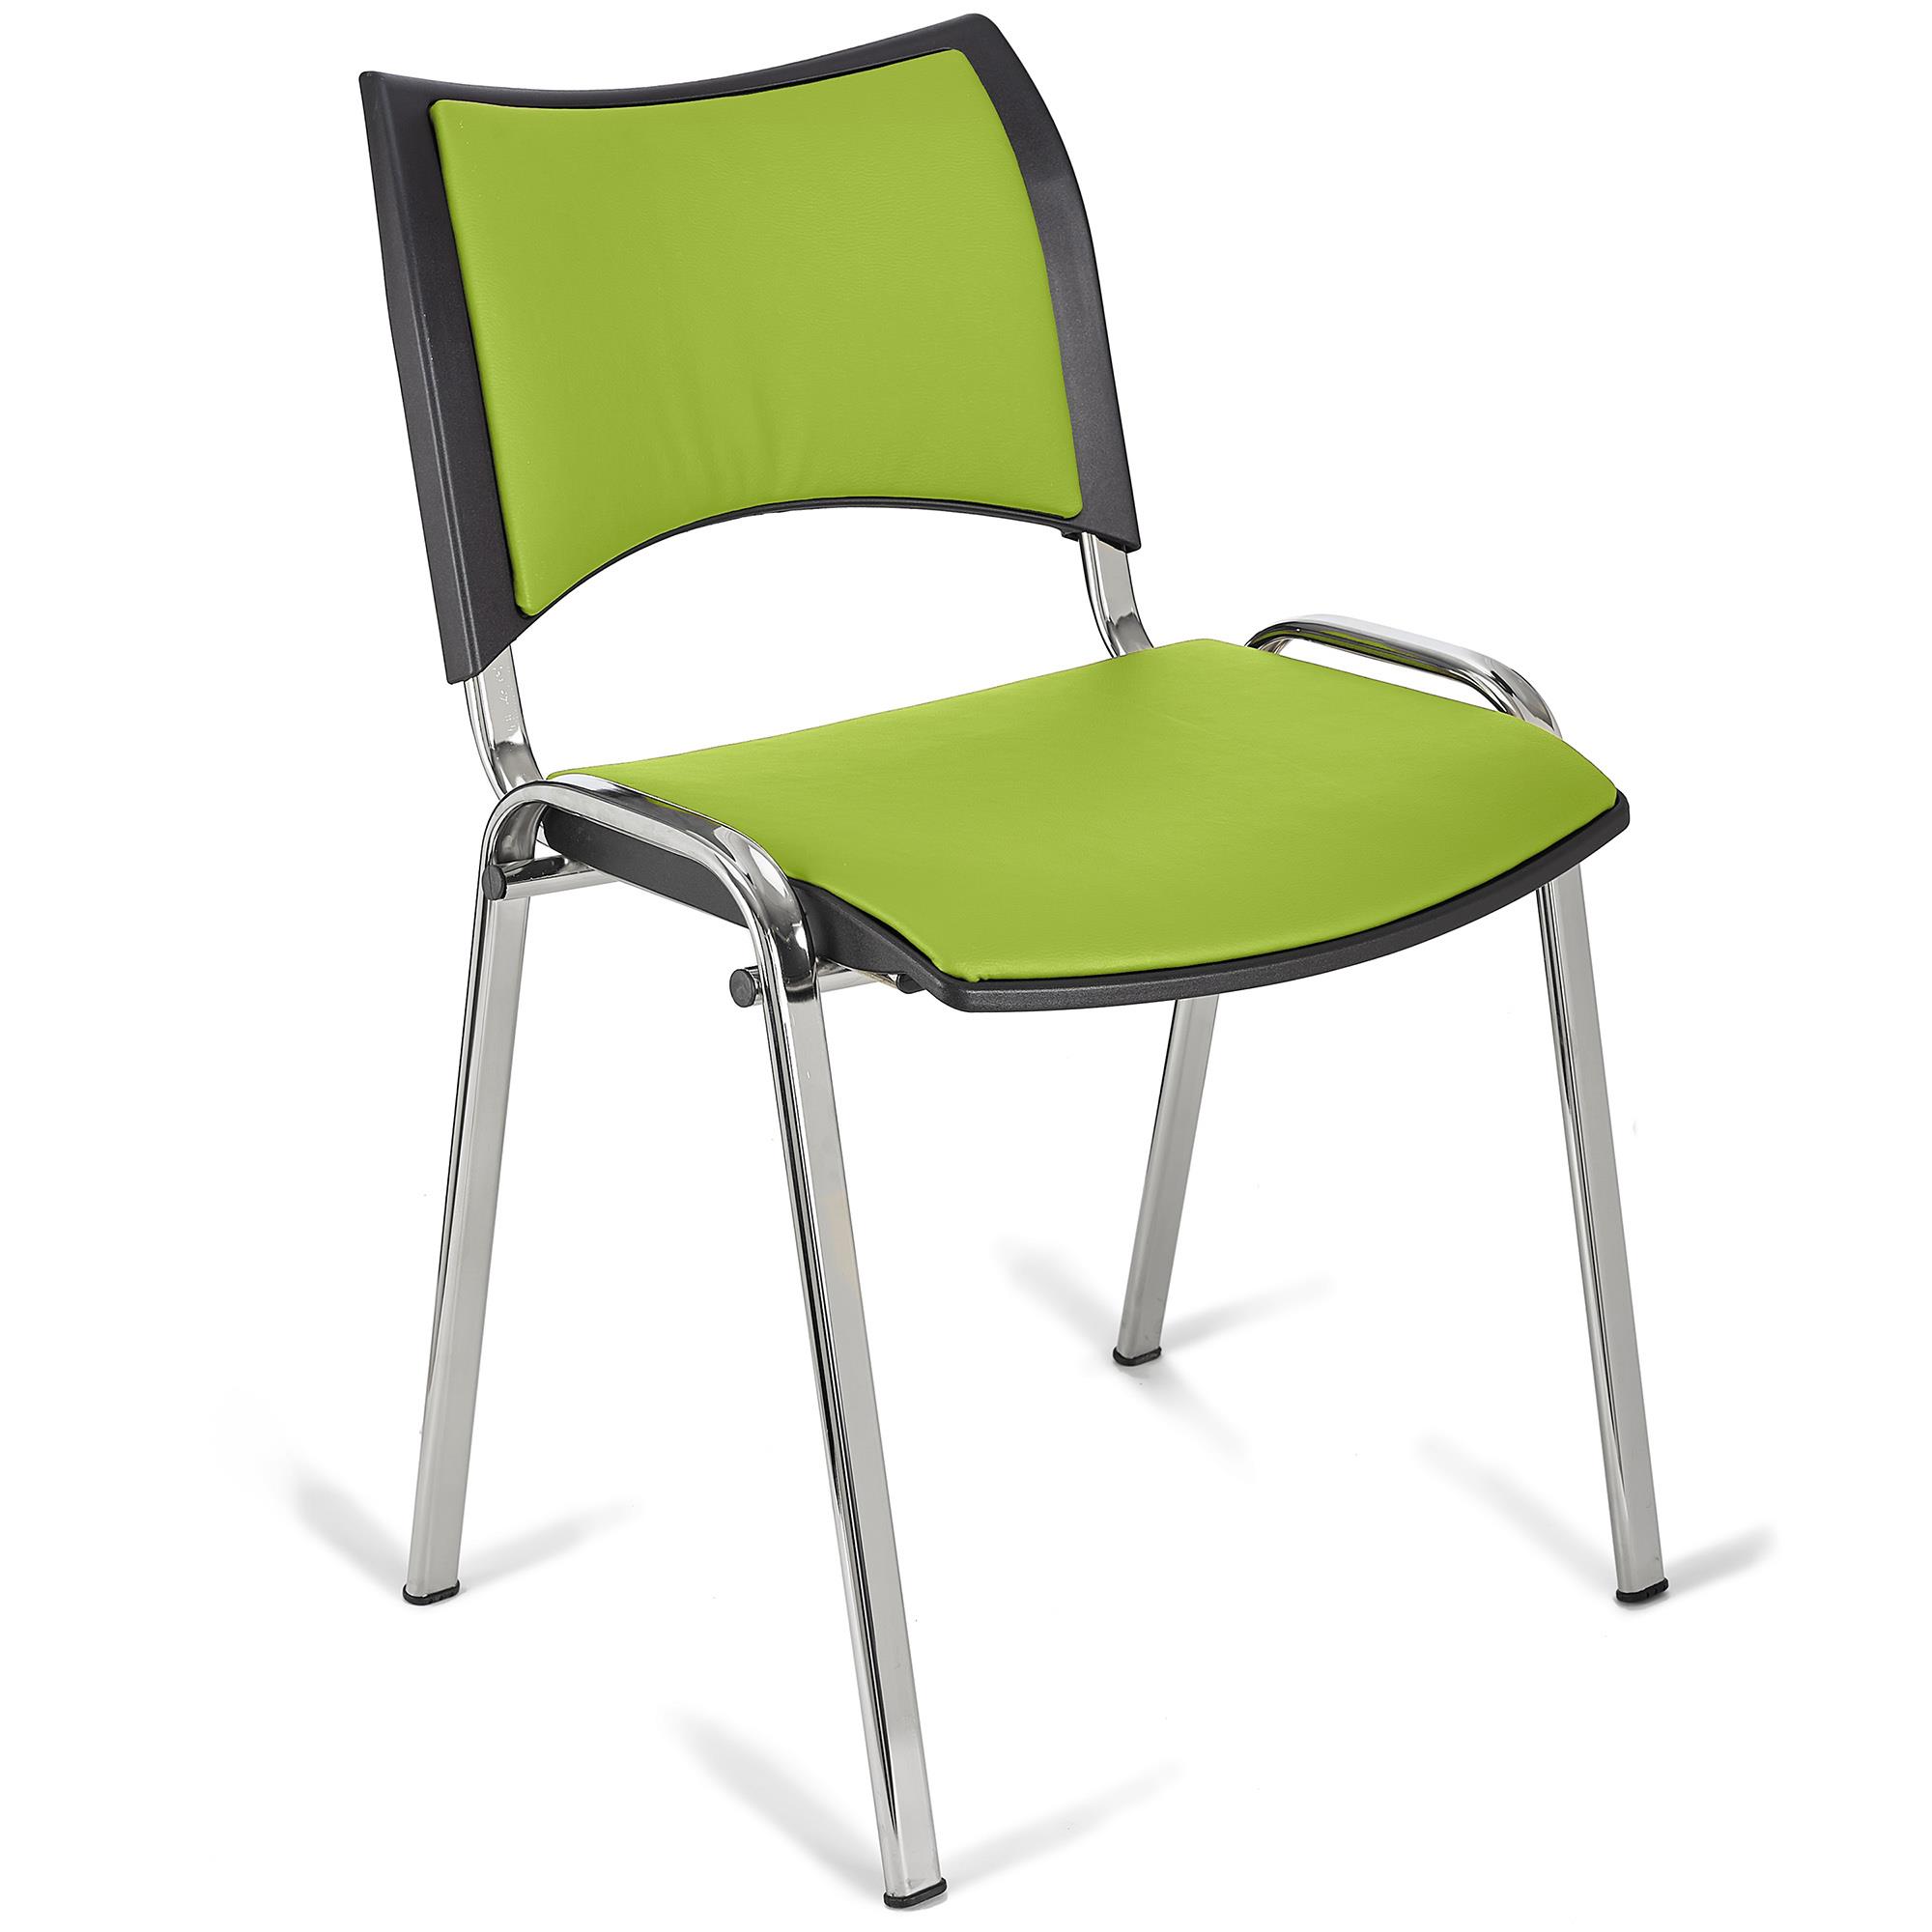 Cadeira de Visita ROMEL PELE, Prática e Empilhável, Pernas Cromadas, Verde